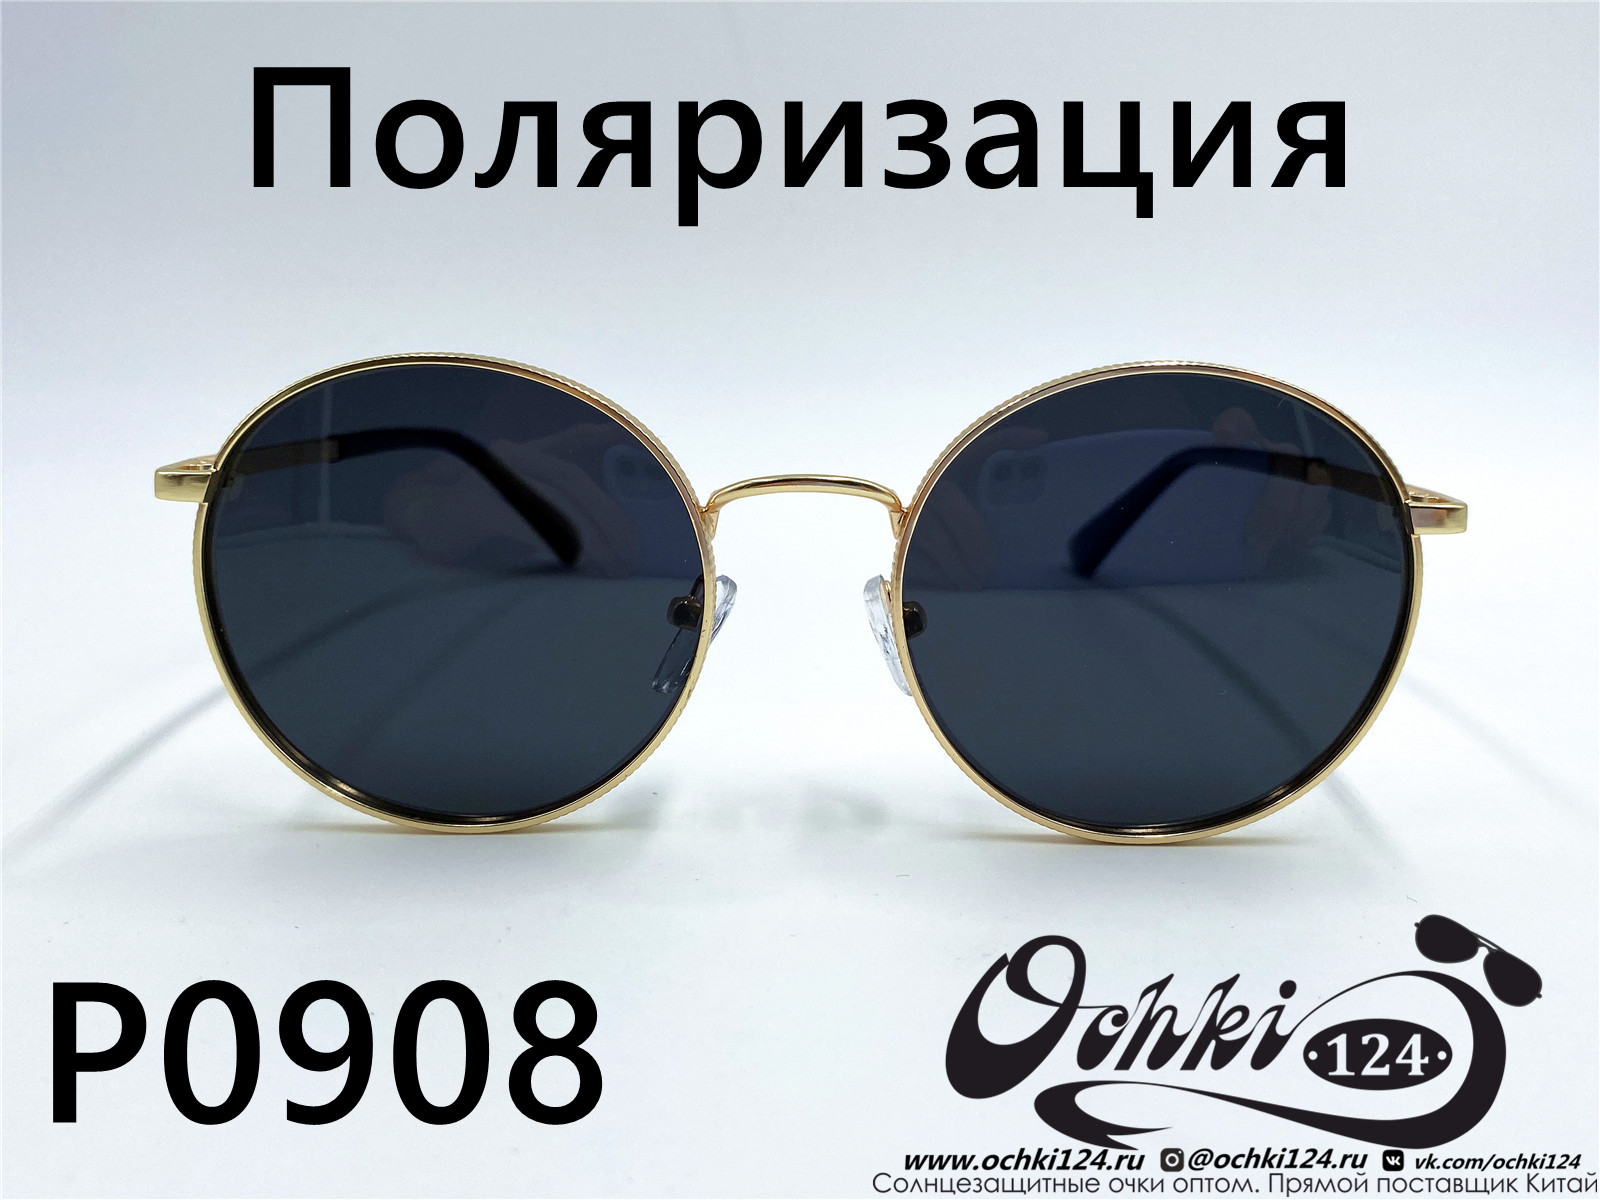  Солнцезащитные очки картинка 2022 Женские Поляризованные Круглые  P0908-3 